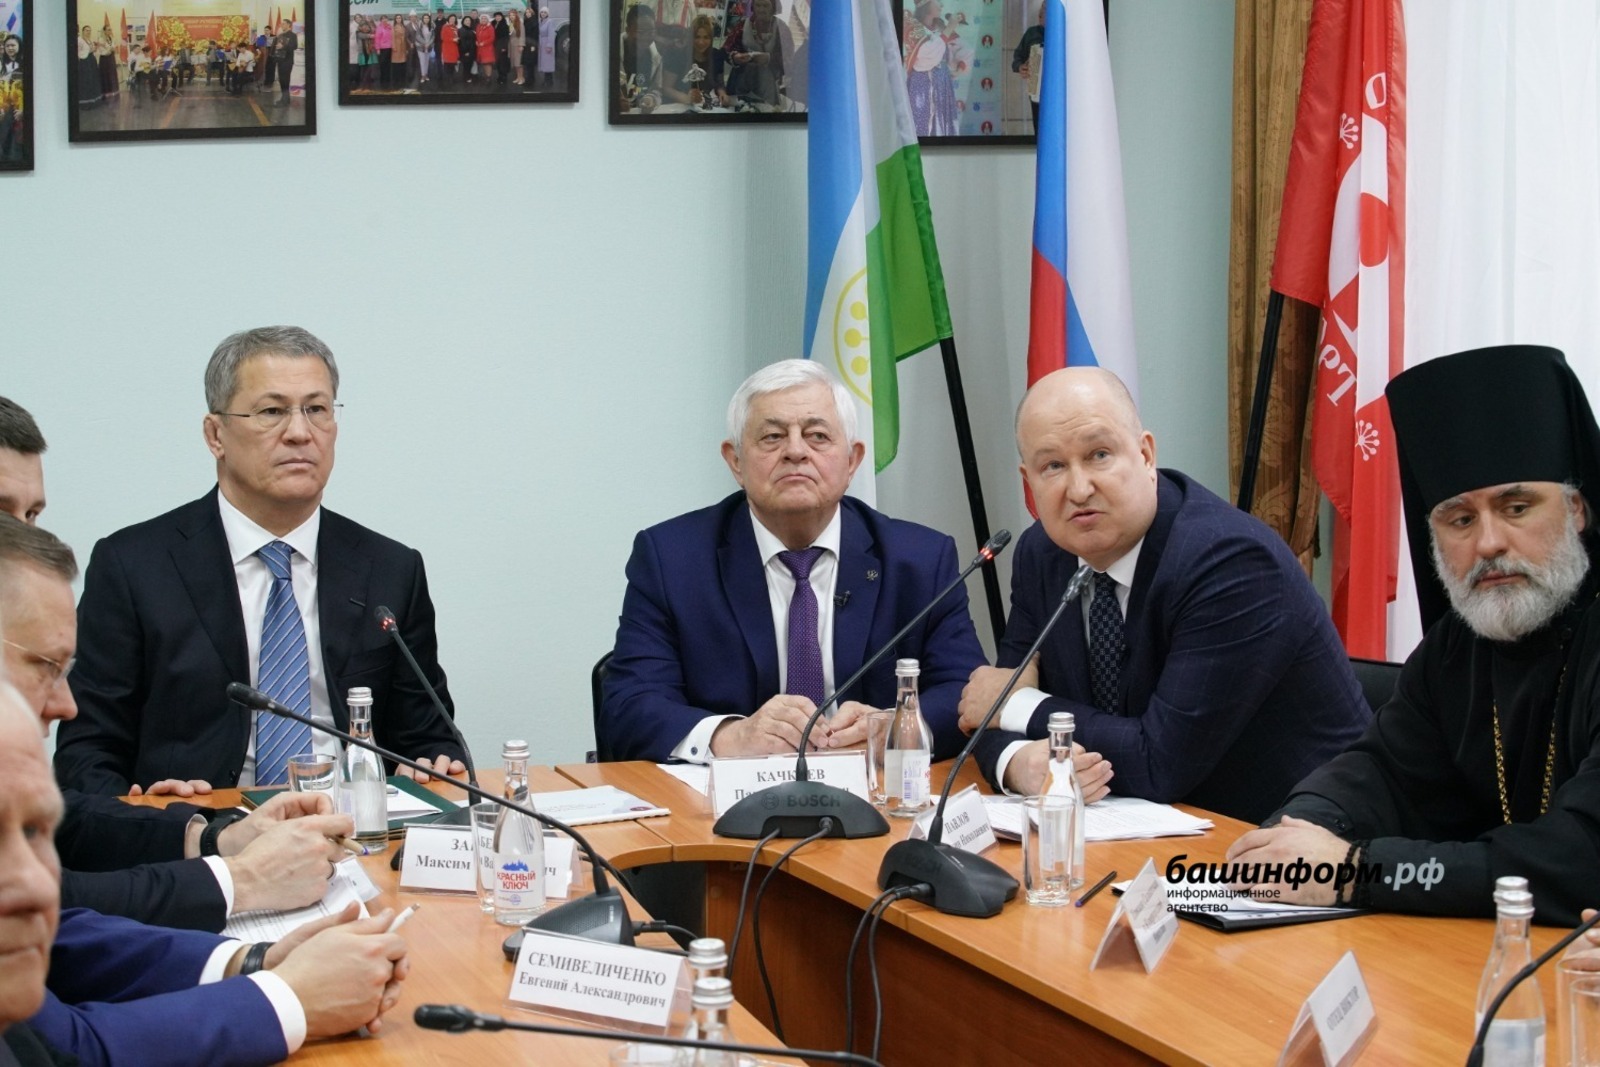 Глава Башкирии Радий Хабиров рассказал о межнациональном согласии в республике